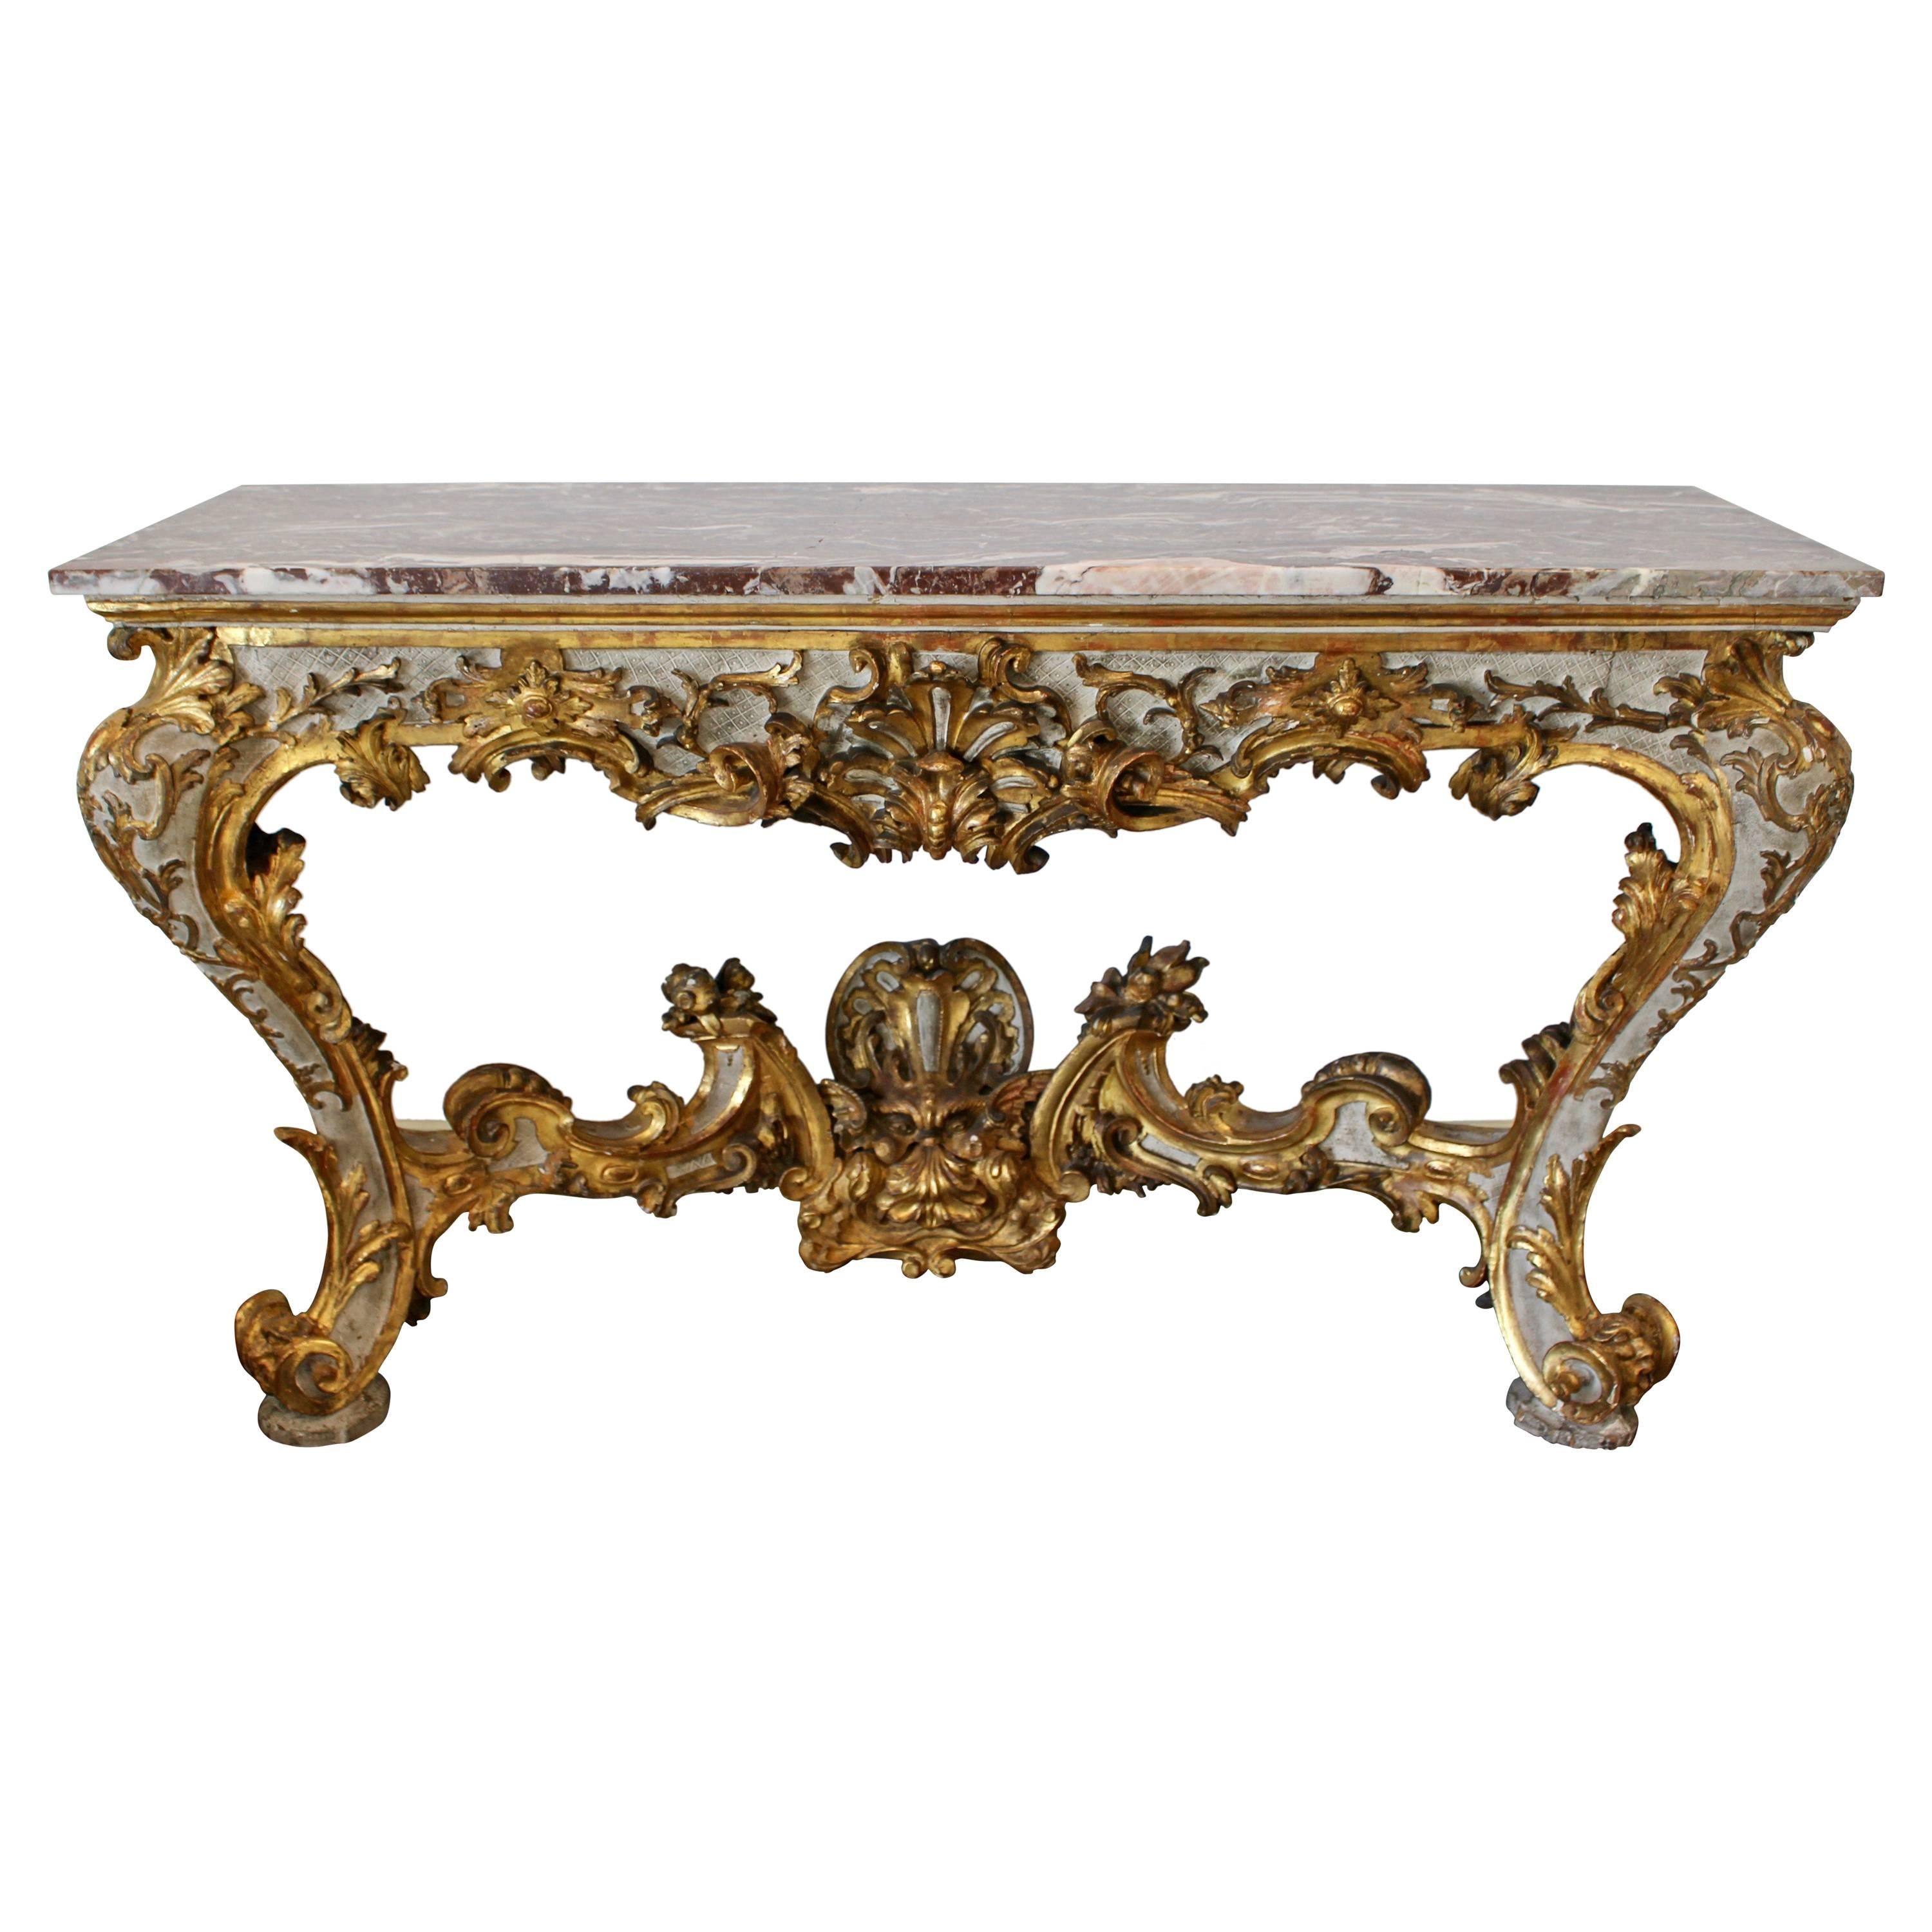 Table console vénitienne des années 1720 en bois doré de la période rococo précoce avec plateau en marbre rouge